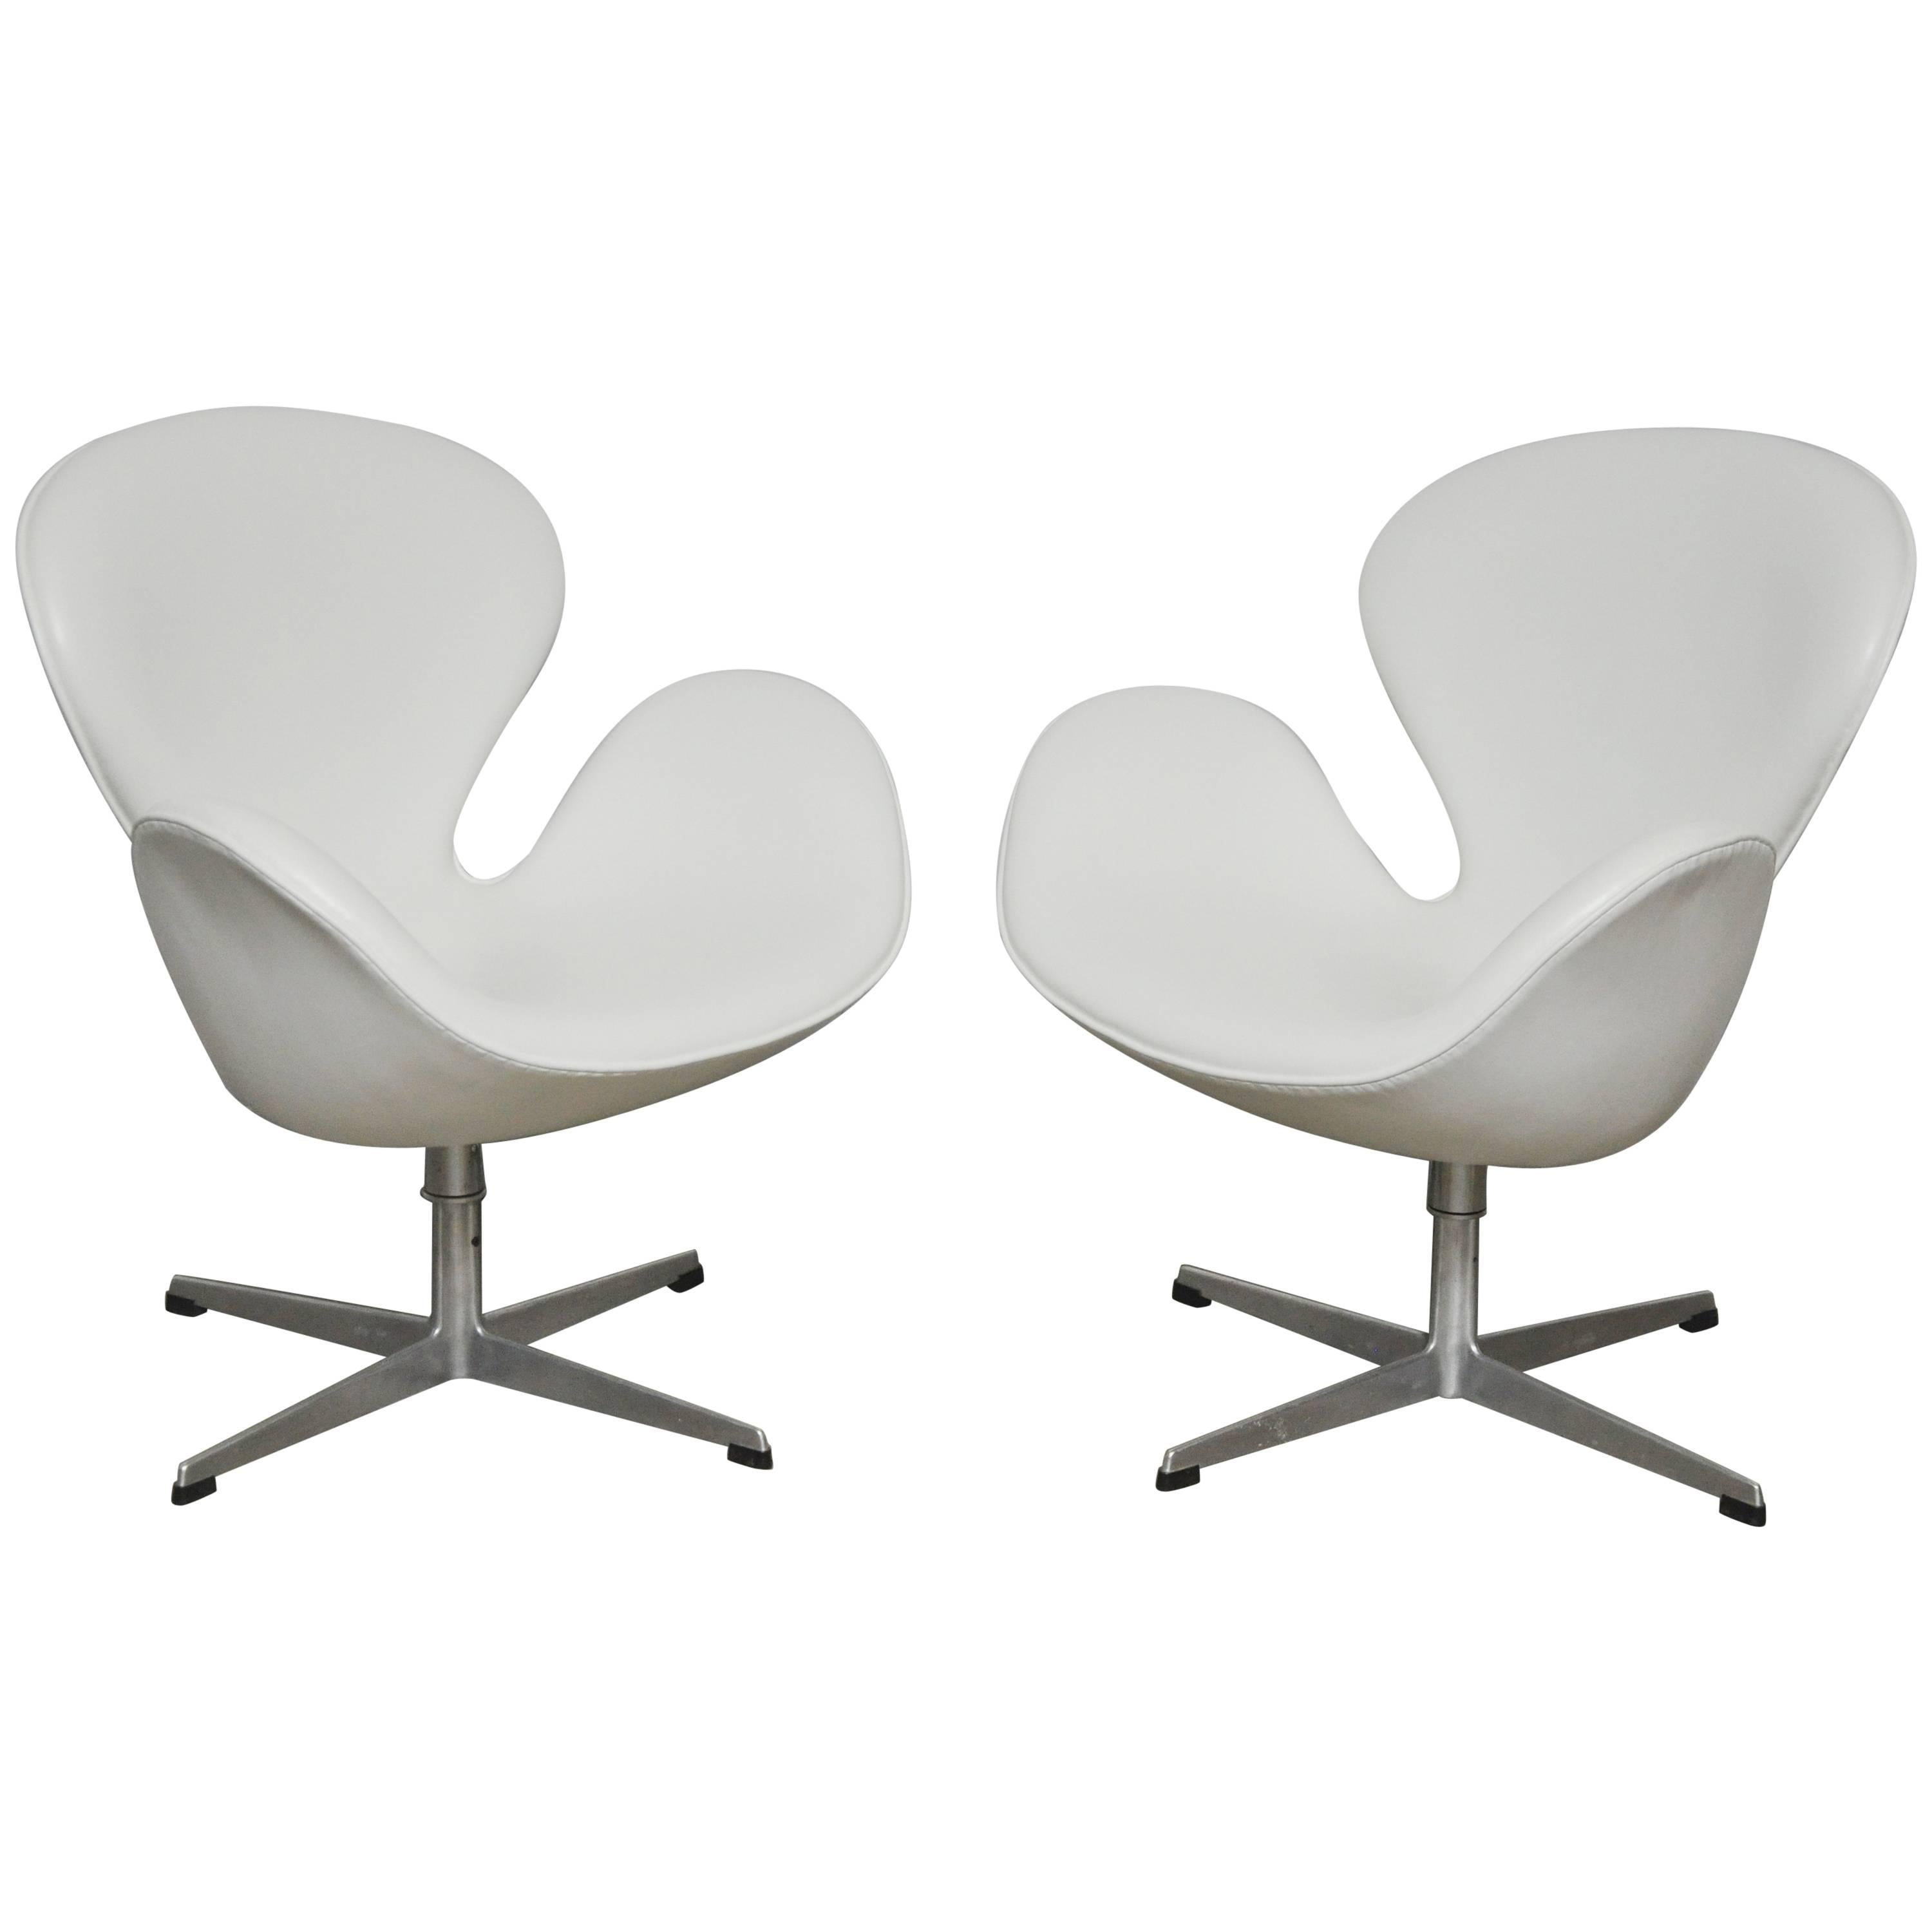 Early Model Swan Chairs by Arne Jacobsen, Swivel & Tilt